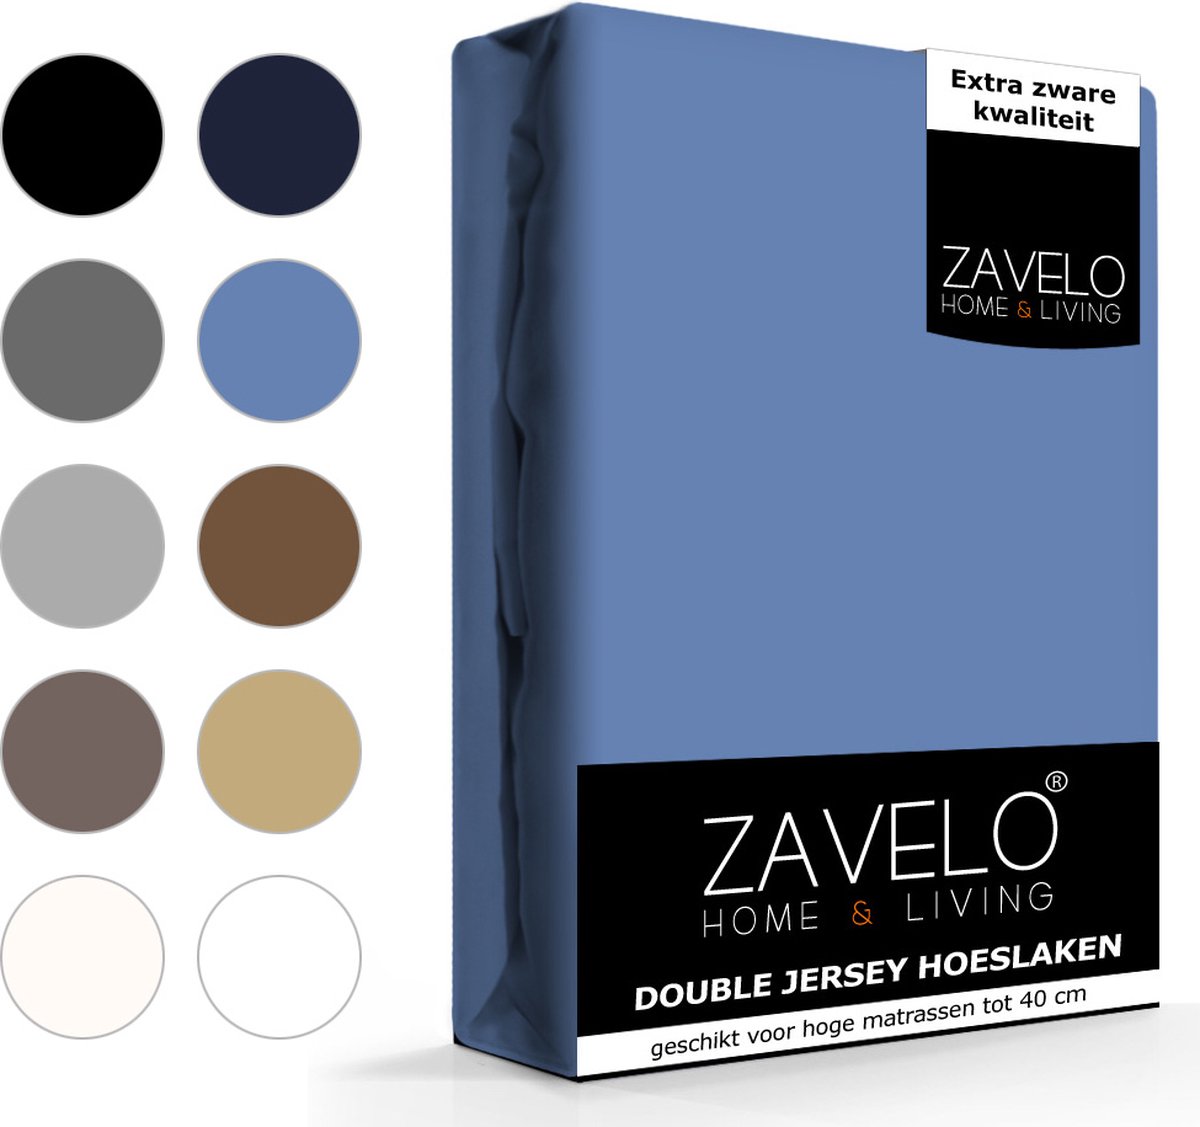 Slaaptextiel Zavelo Double Jersey Hoeslaken-1-persoons (90x200 Cm) - Blauw